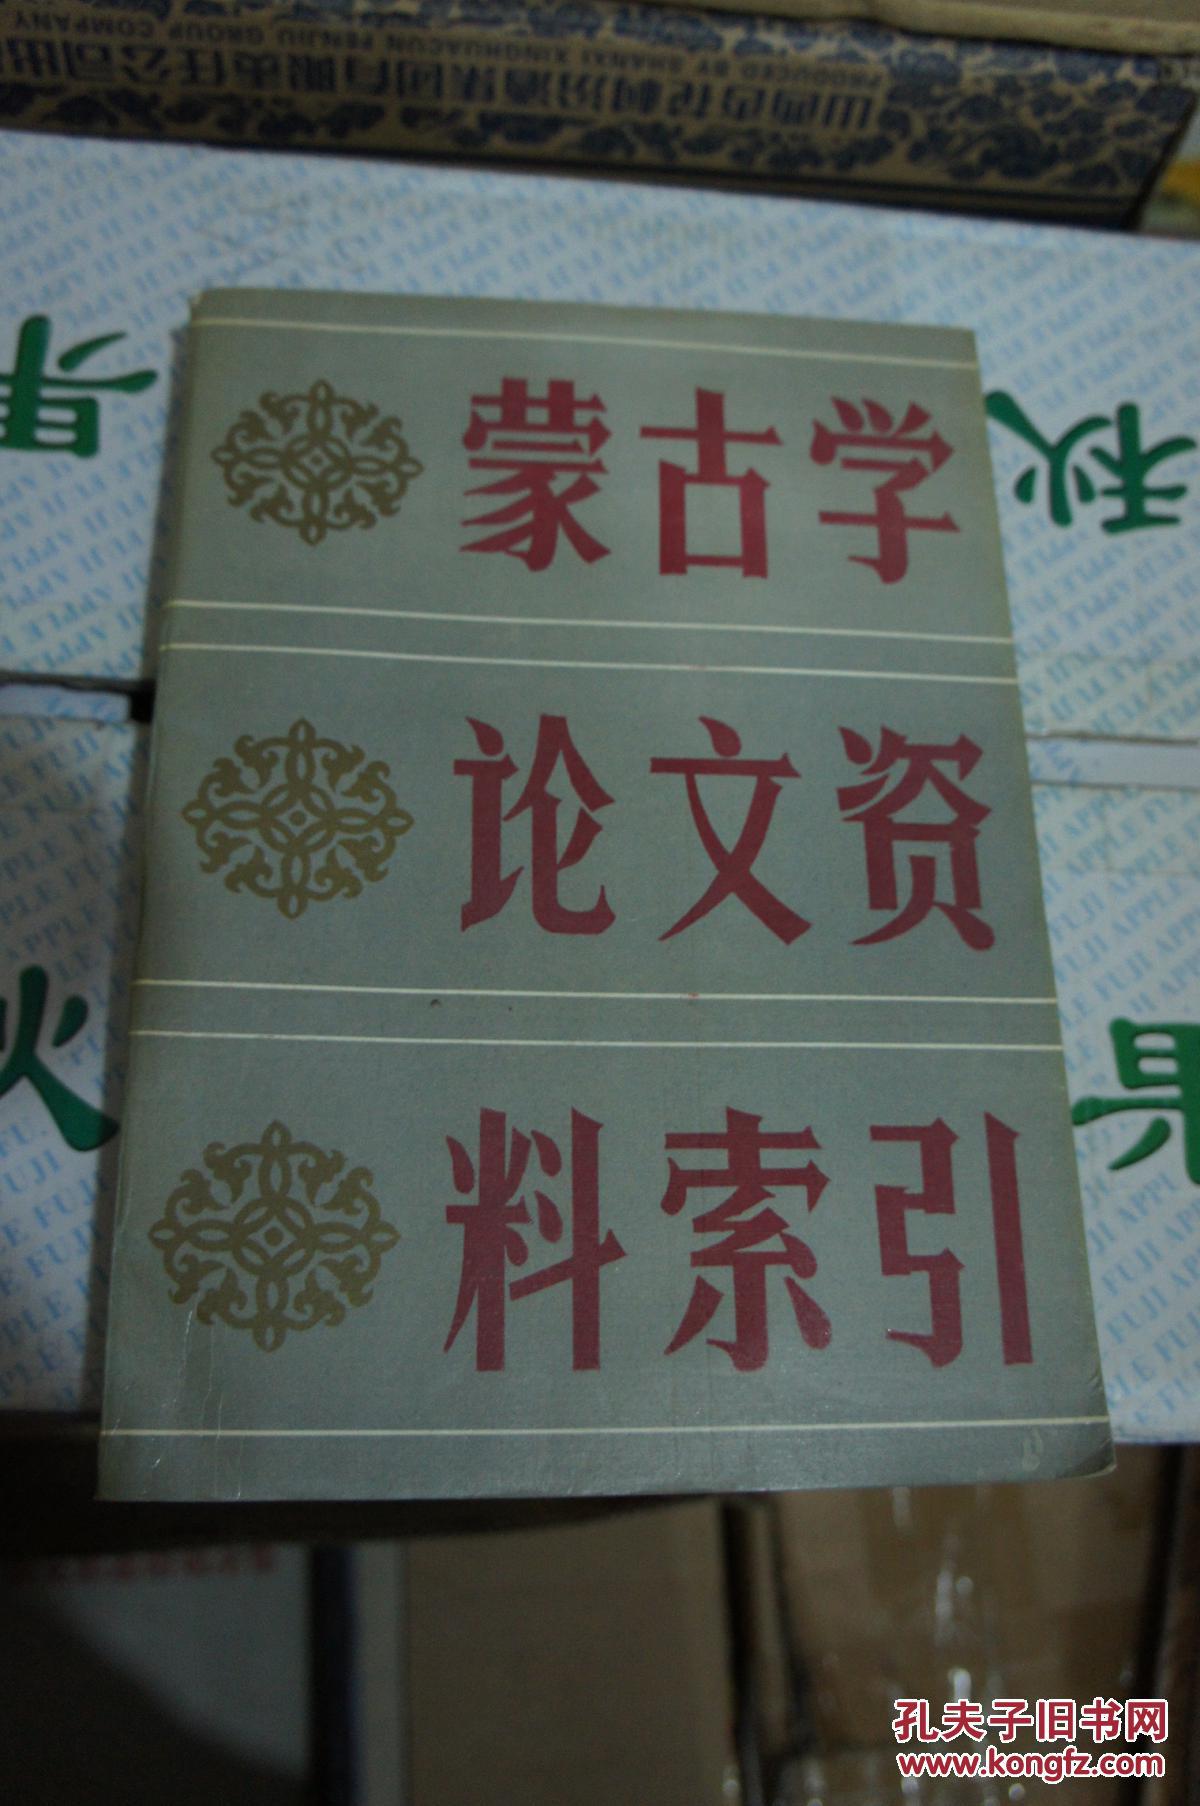 蒙古学论文资料索引 1949-1985 一版一印 印量2700册